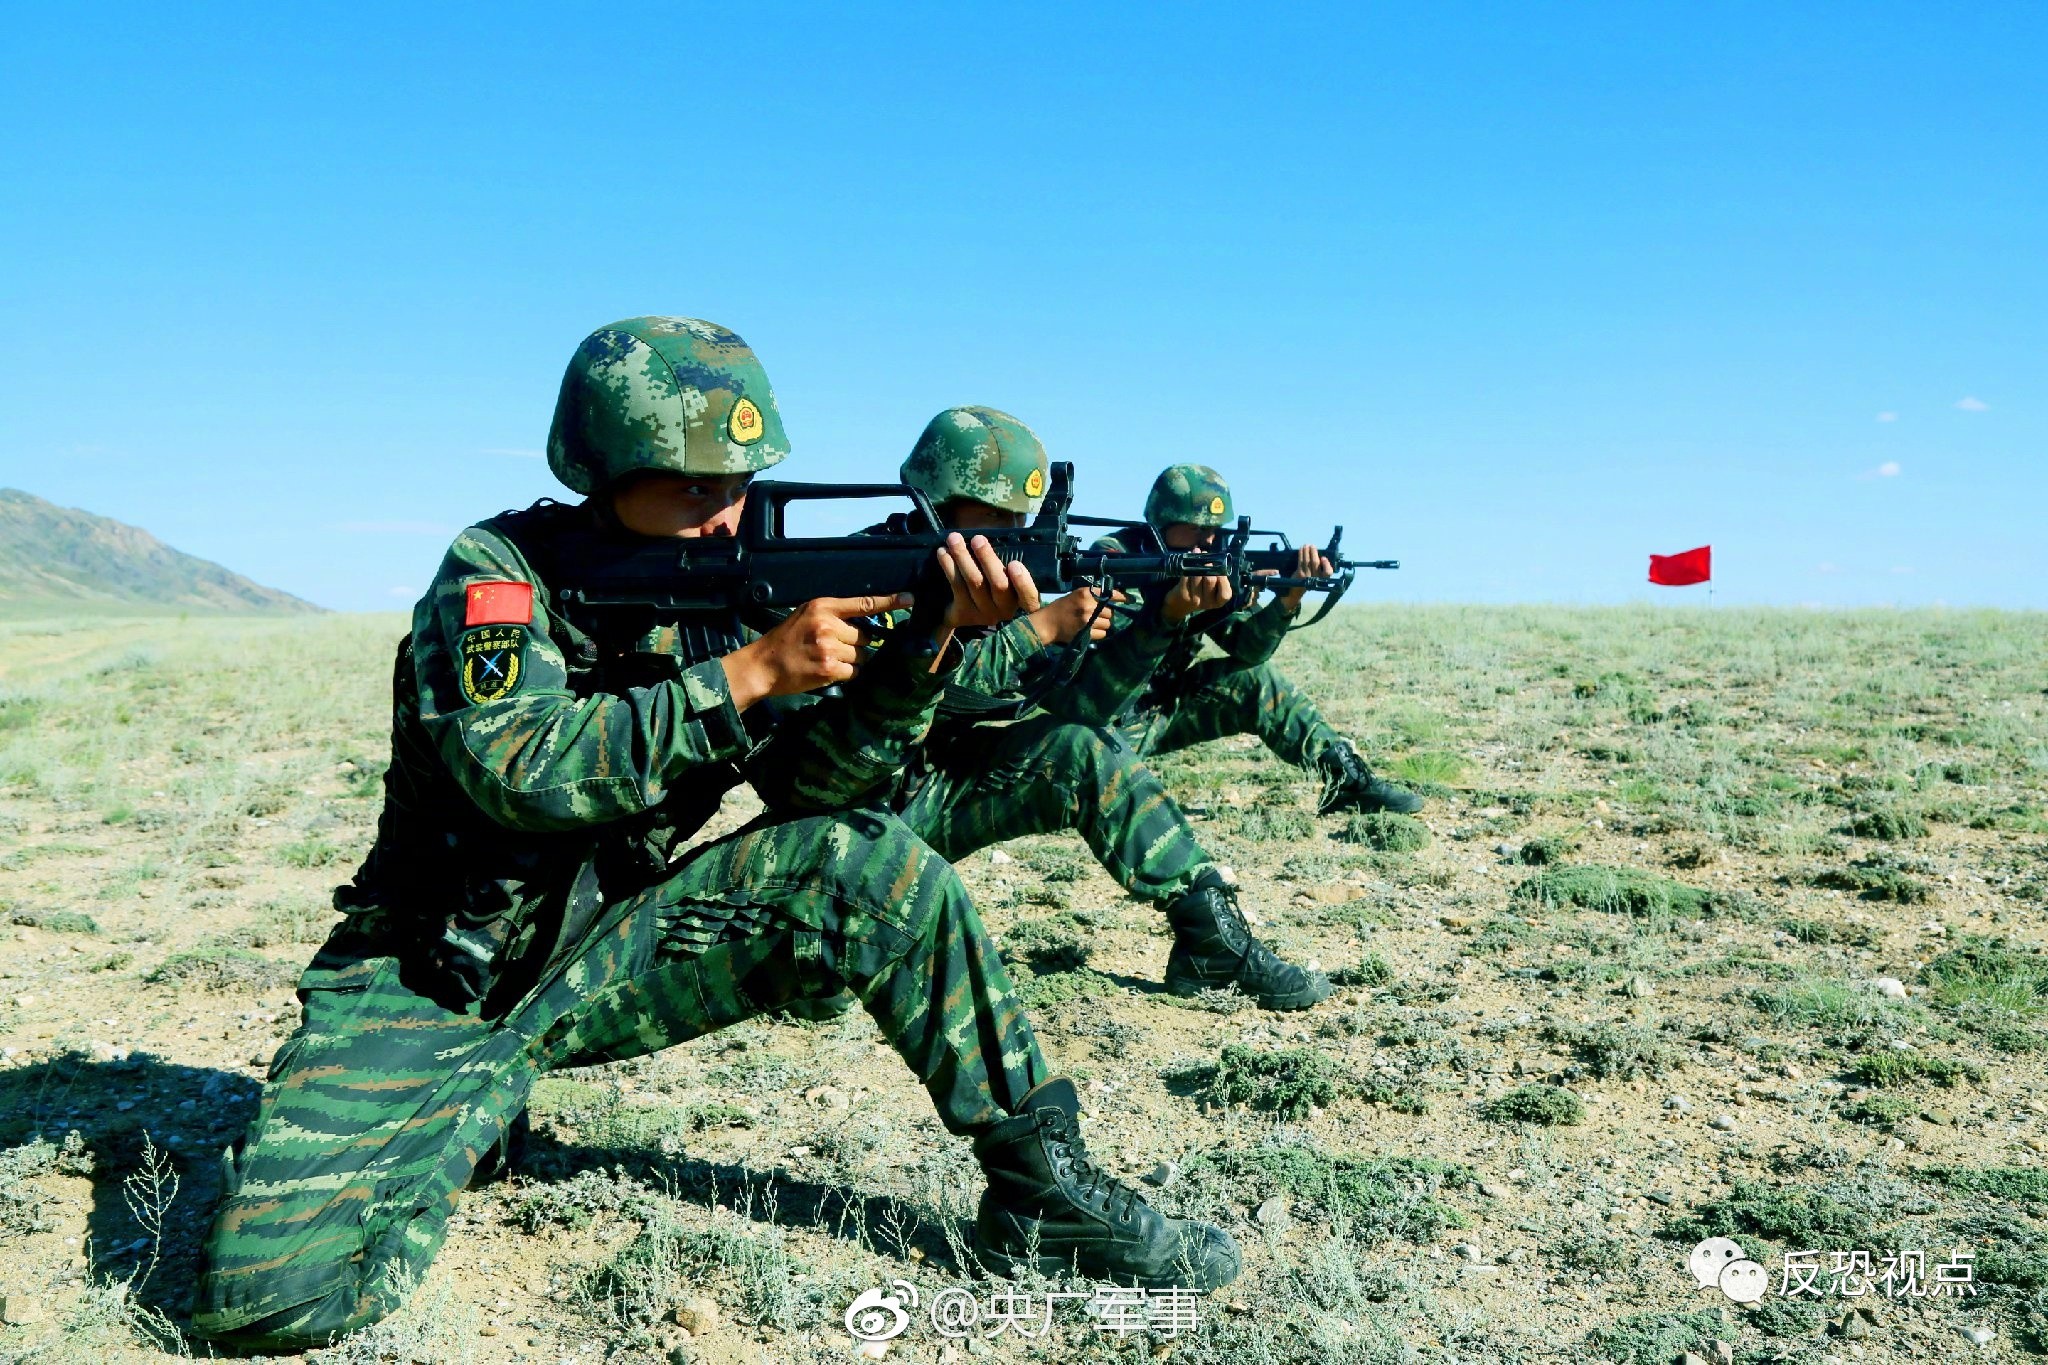 多图直击新疆某边境多兵种联合演练 六位一体歼灭暴恐分子